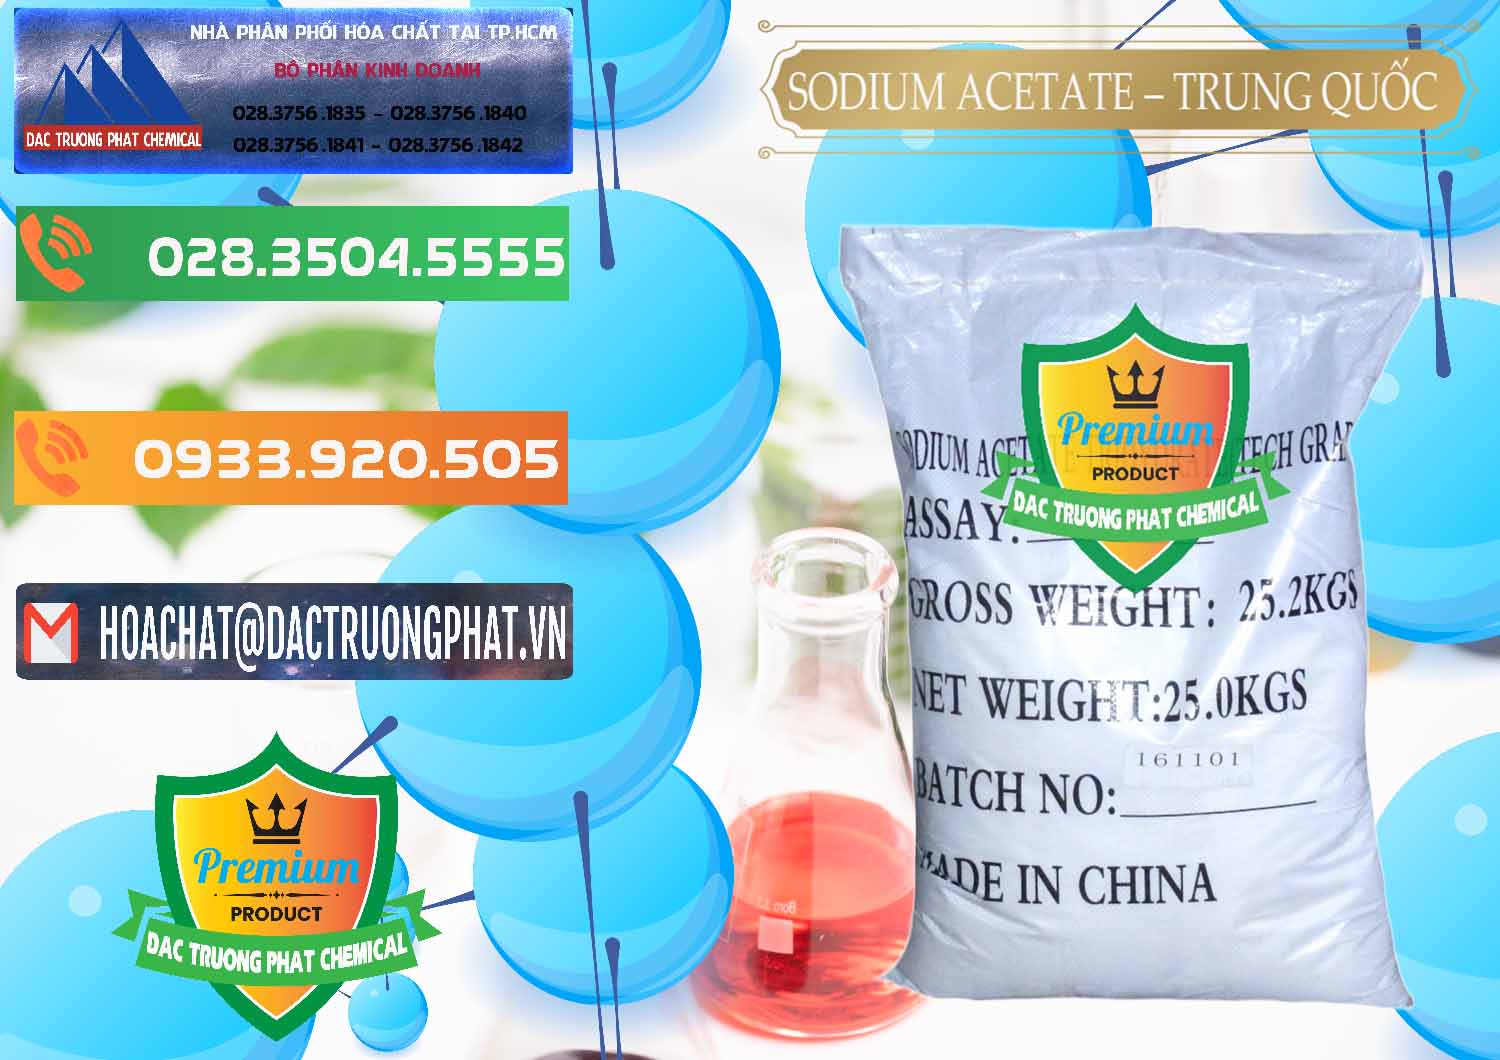 Chuyên bán ( cung cấp ) Sodium Acetate - Natri Acetate Trung Quốc China - 0134 - Chuyên cung cấp ( nhập khẩu ) hóa chất tại TP.HCM - hoachatxulynuoc.com.vn